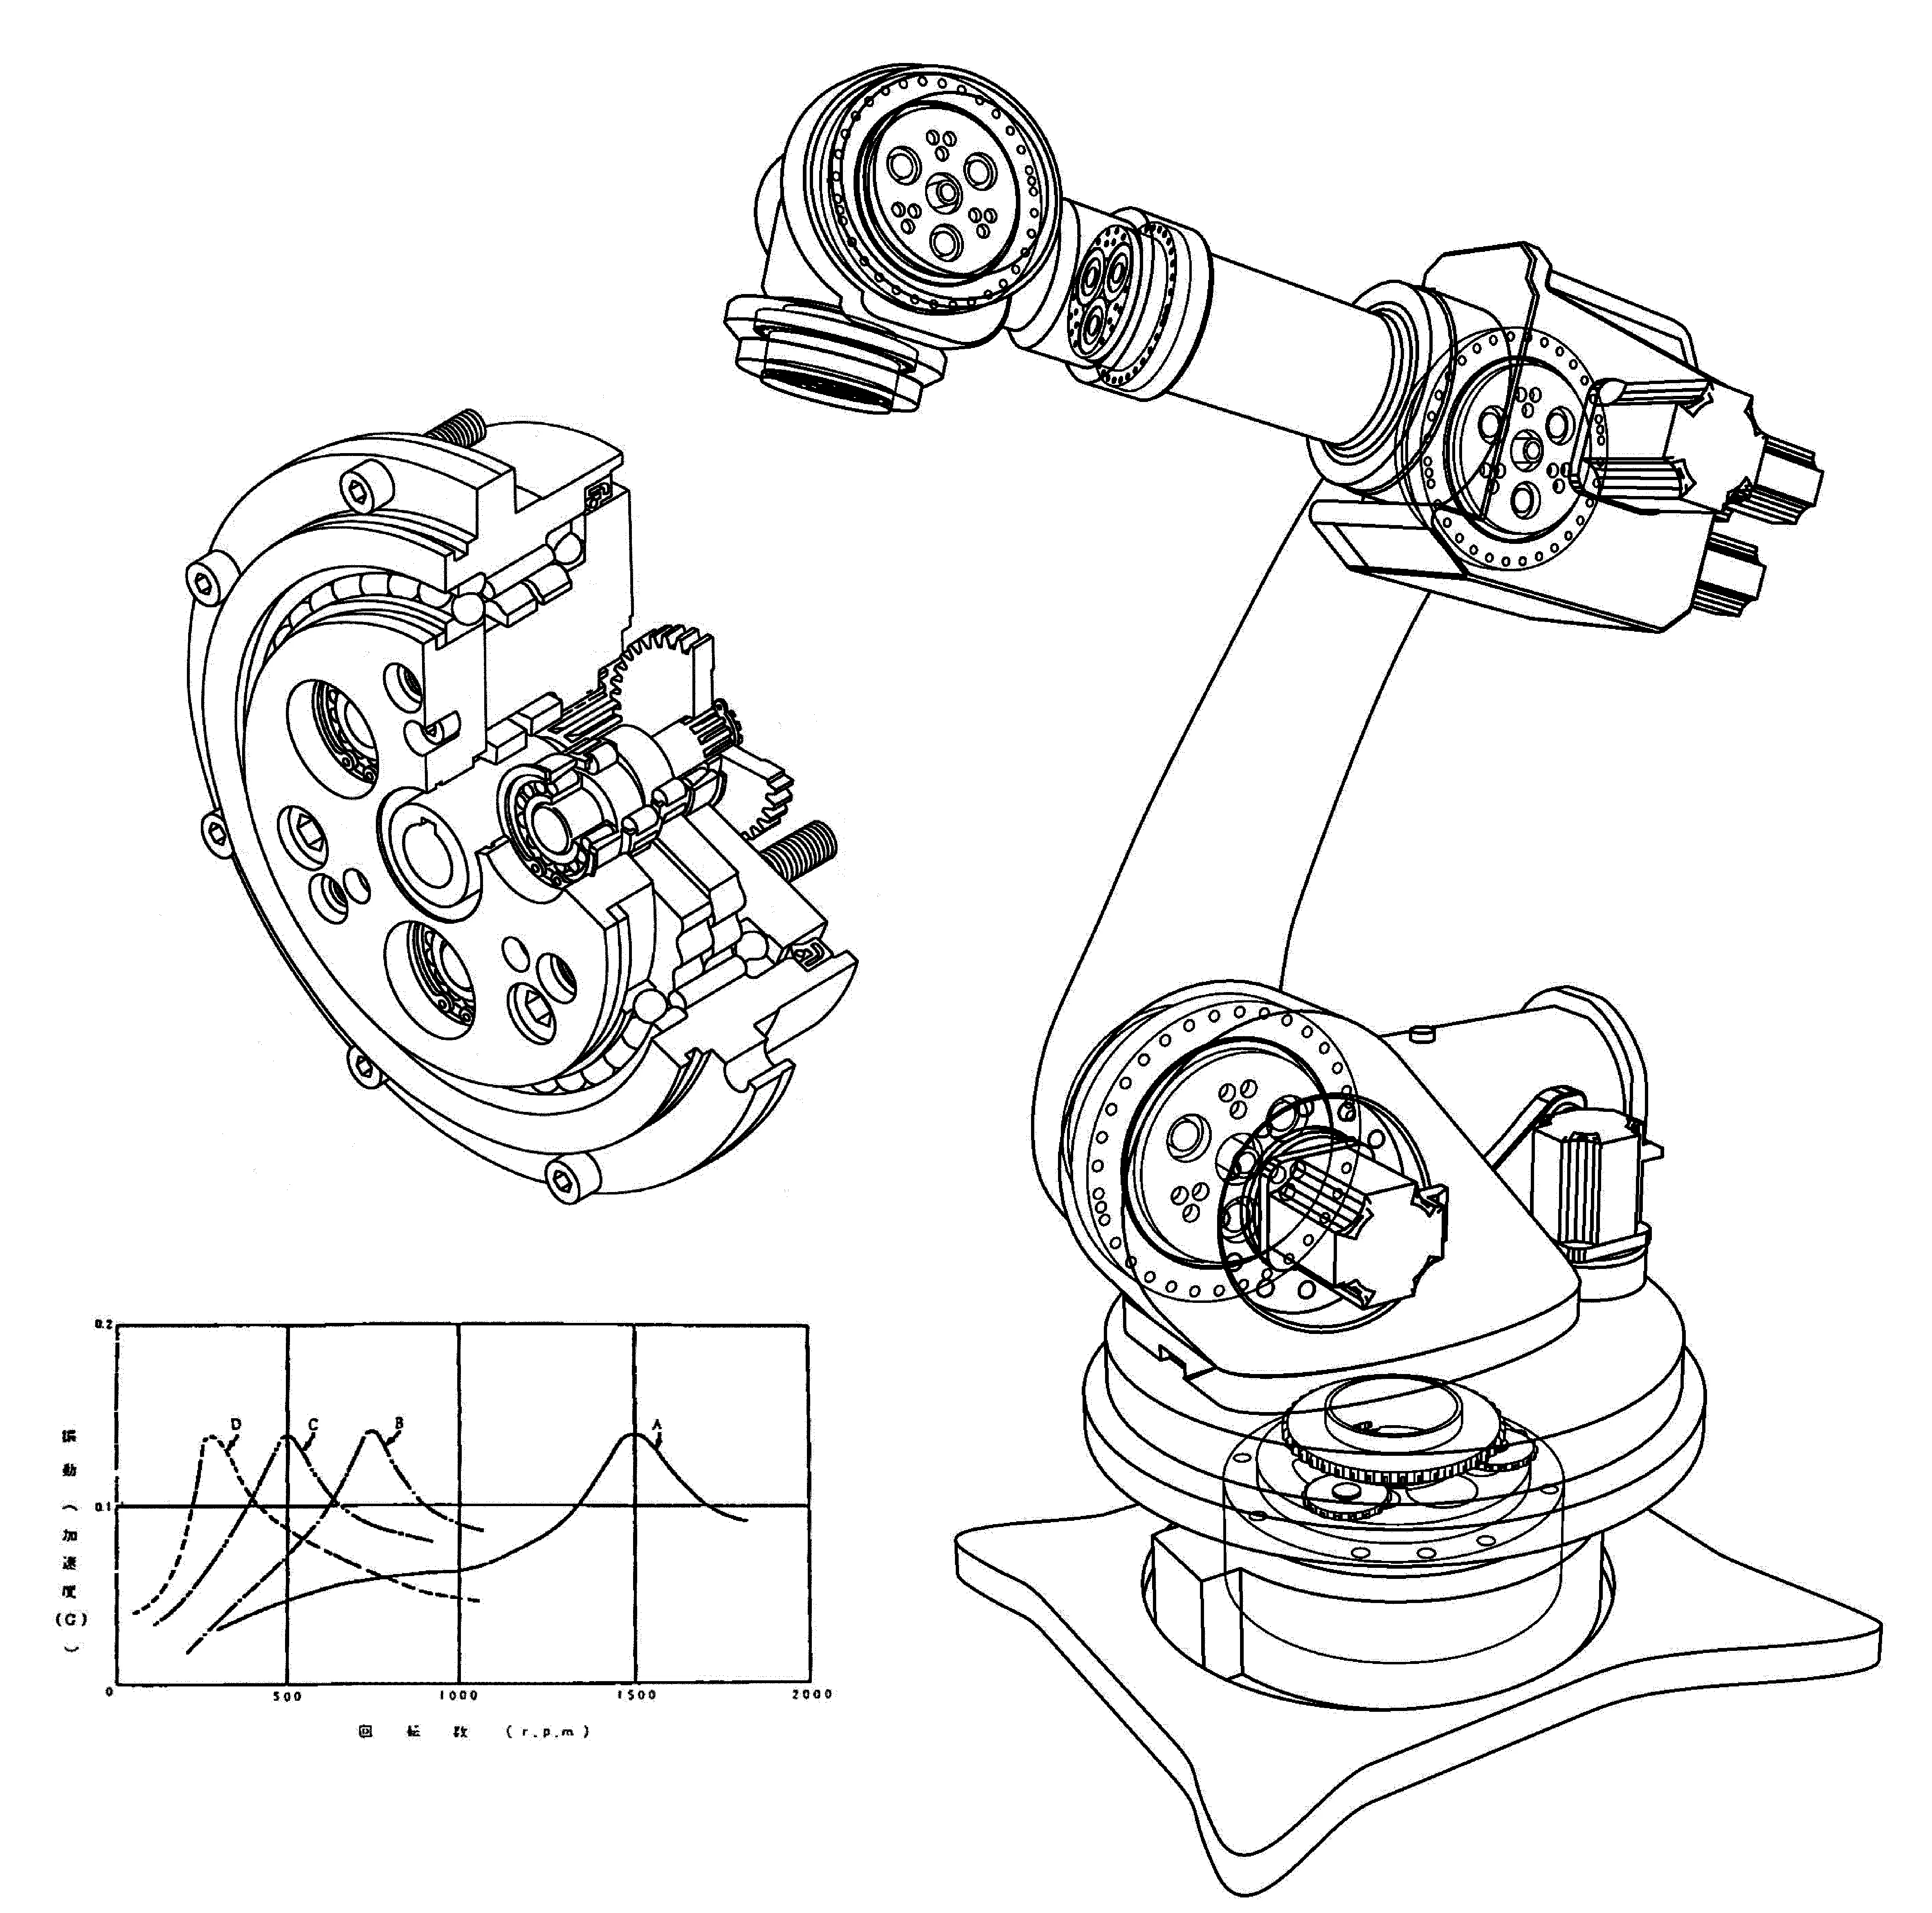 二段減速機構の減速機を用いた産業用ロボットの関節構造